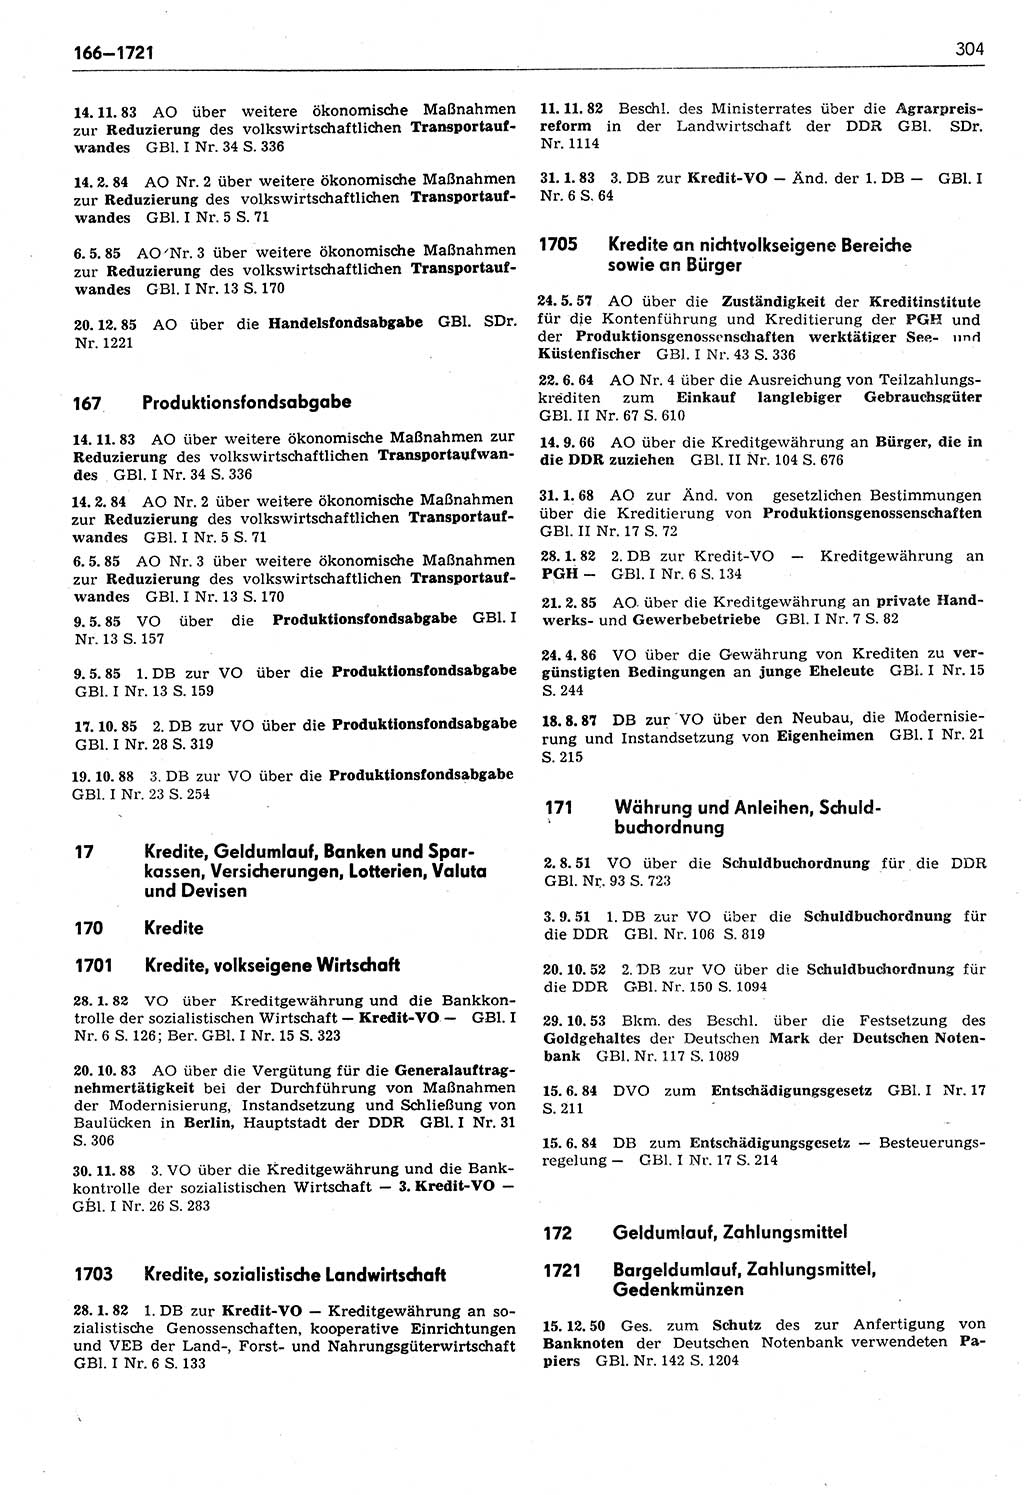 Das geltende Recht der Deutschen Demokratischen Republik (DDR) 1949-1988, Seite 304 (Gelt. R. DDR 1949-1988, S. 304)